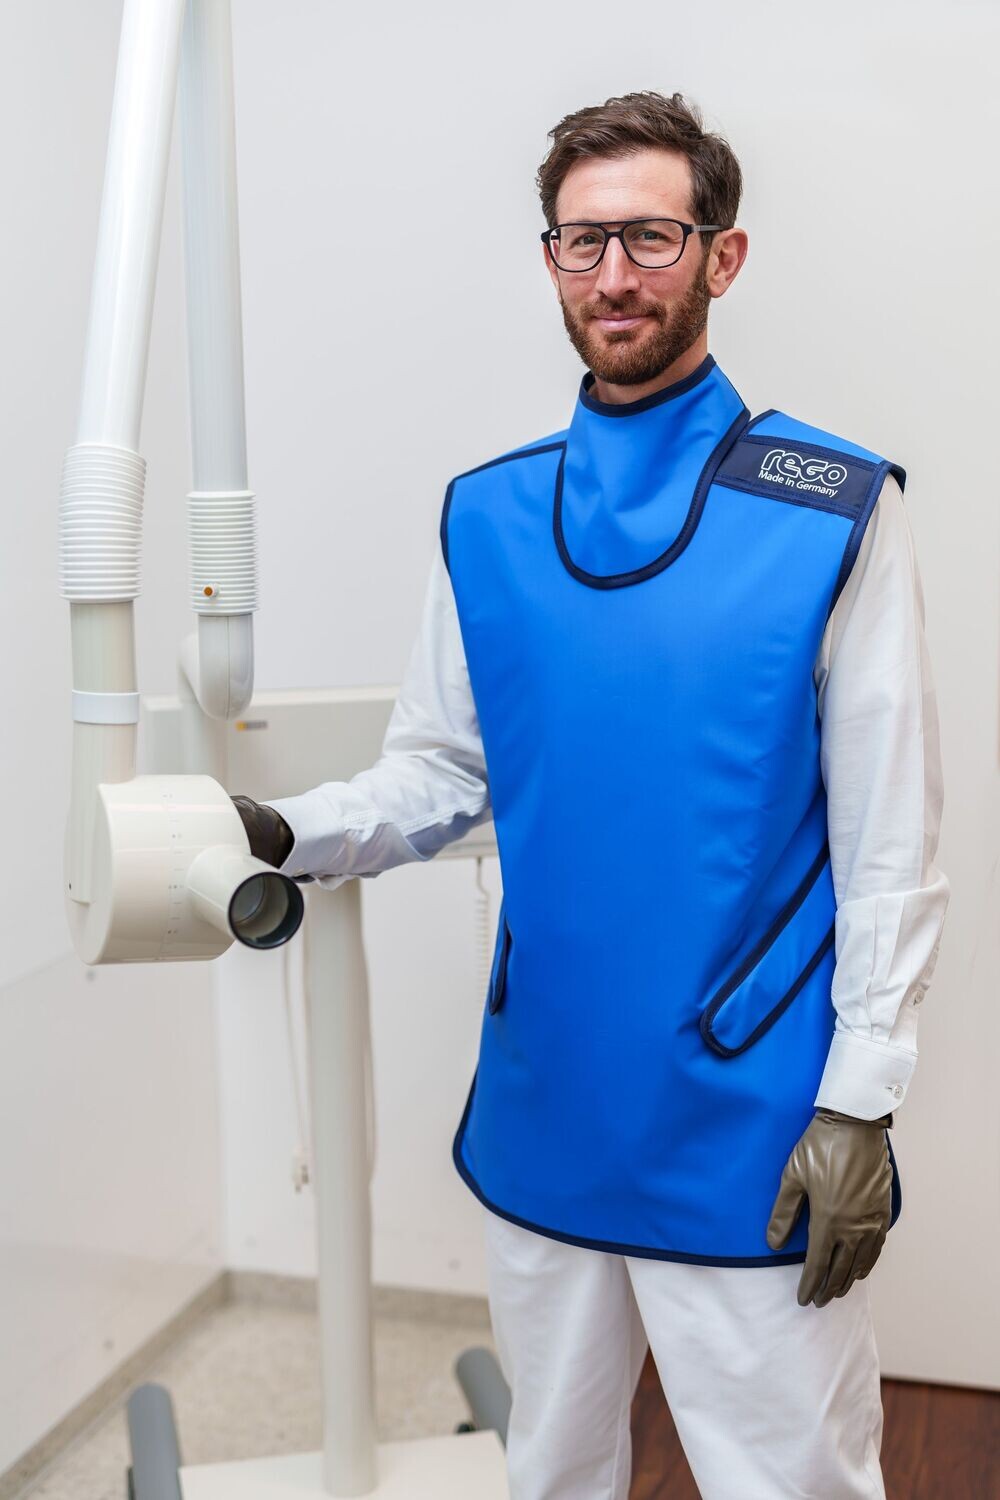 REGO Röntgenschürze - Dentalschürze mit Schilddrüsenschutz als Set für Anwender und Patienten